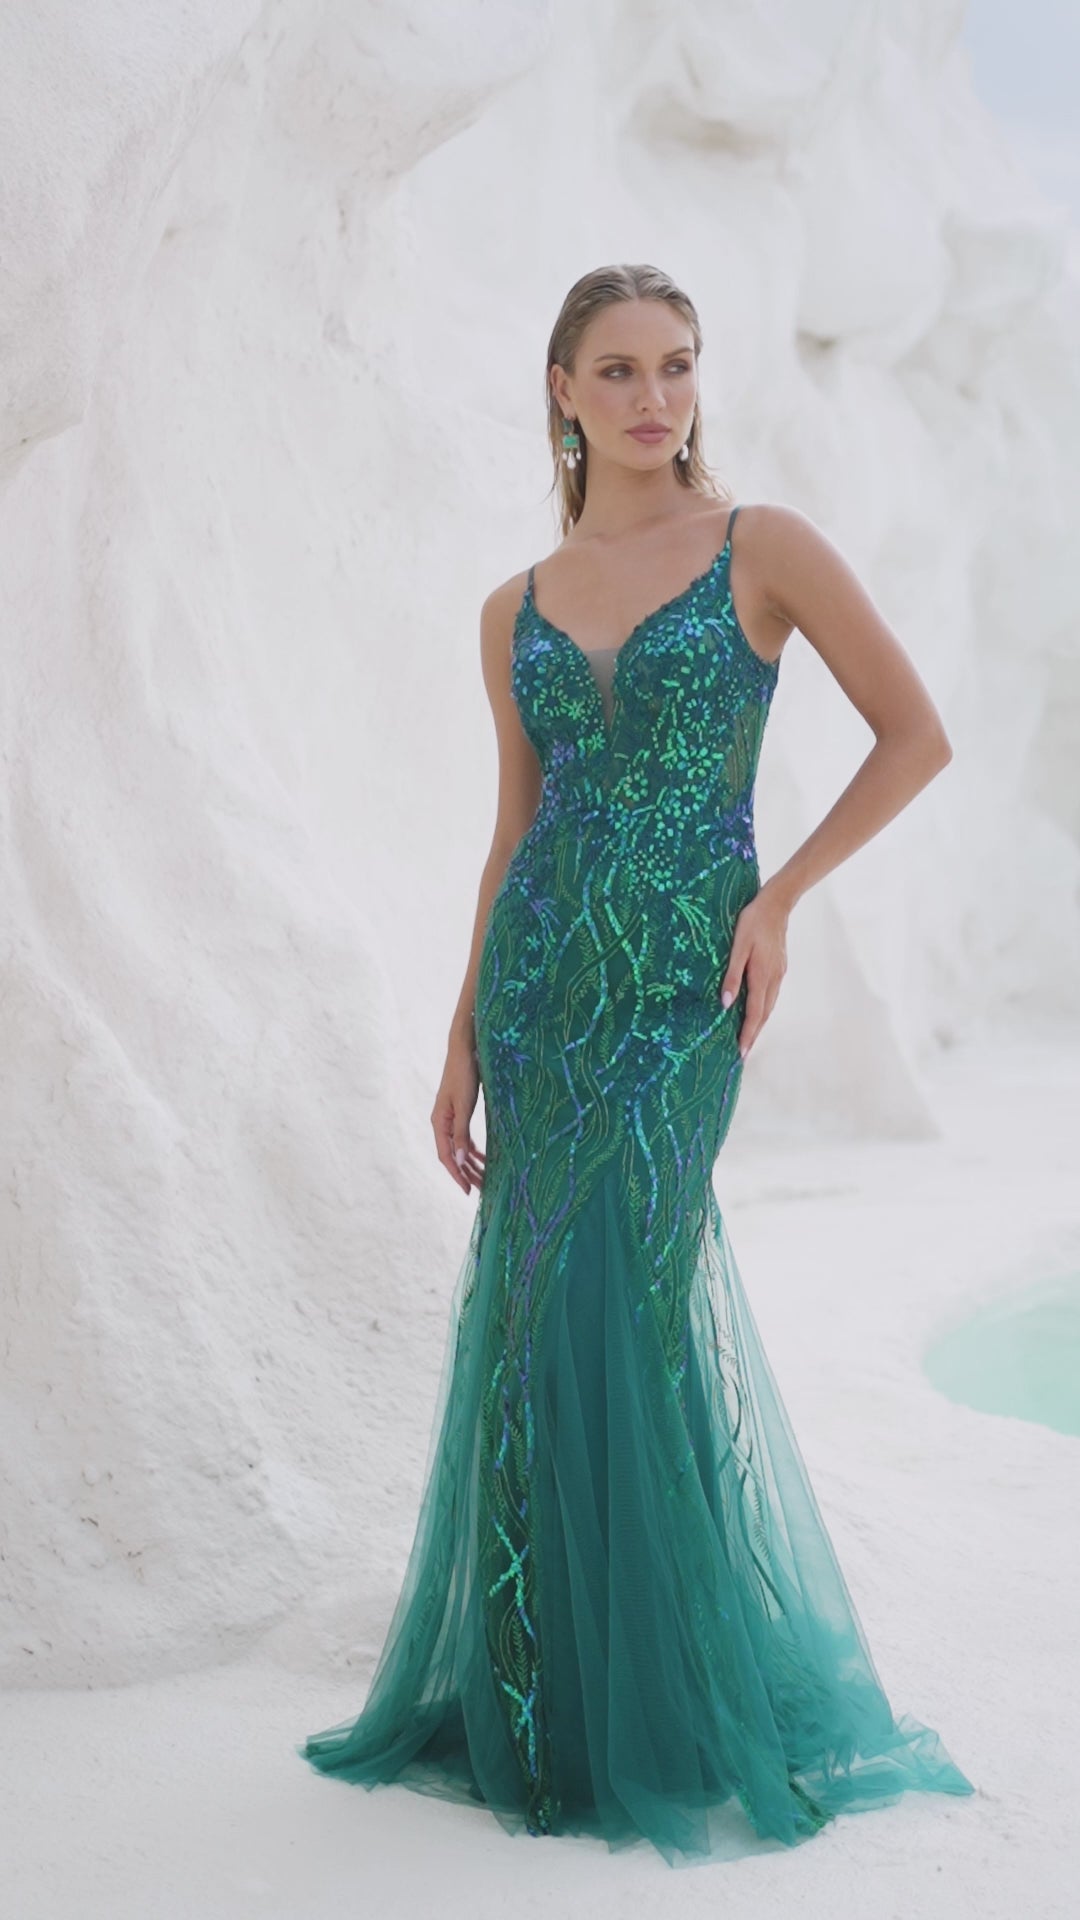 Oceane Dress by Tania Olsen PO2461